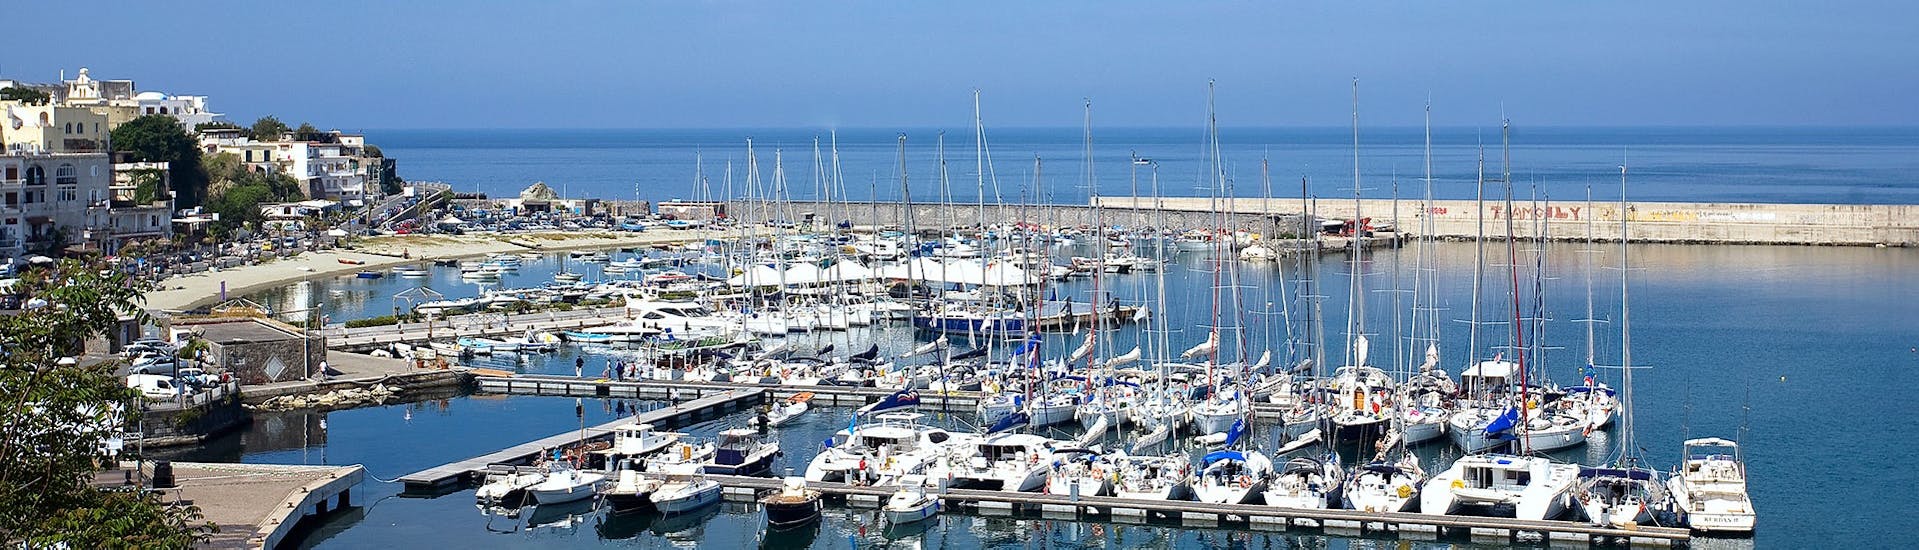 De haven van Forio, die we zullen zien tijdens de boottocht rond Ischia met zwemmen en lunch met Alcione Boat.